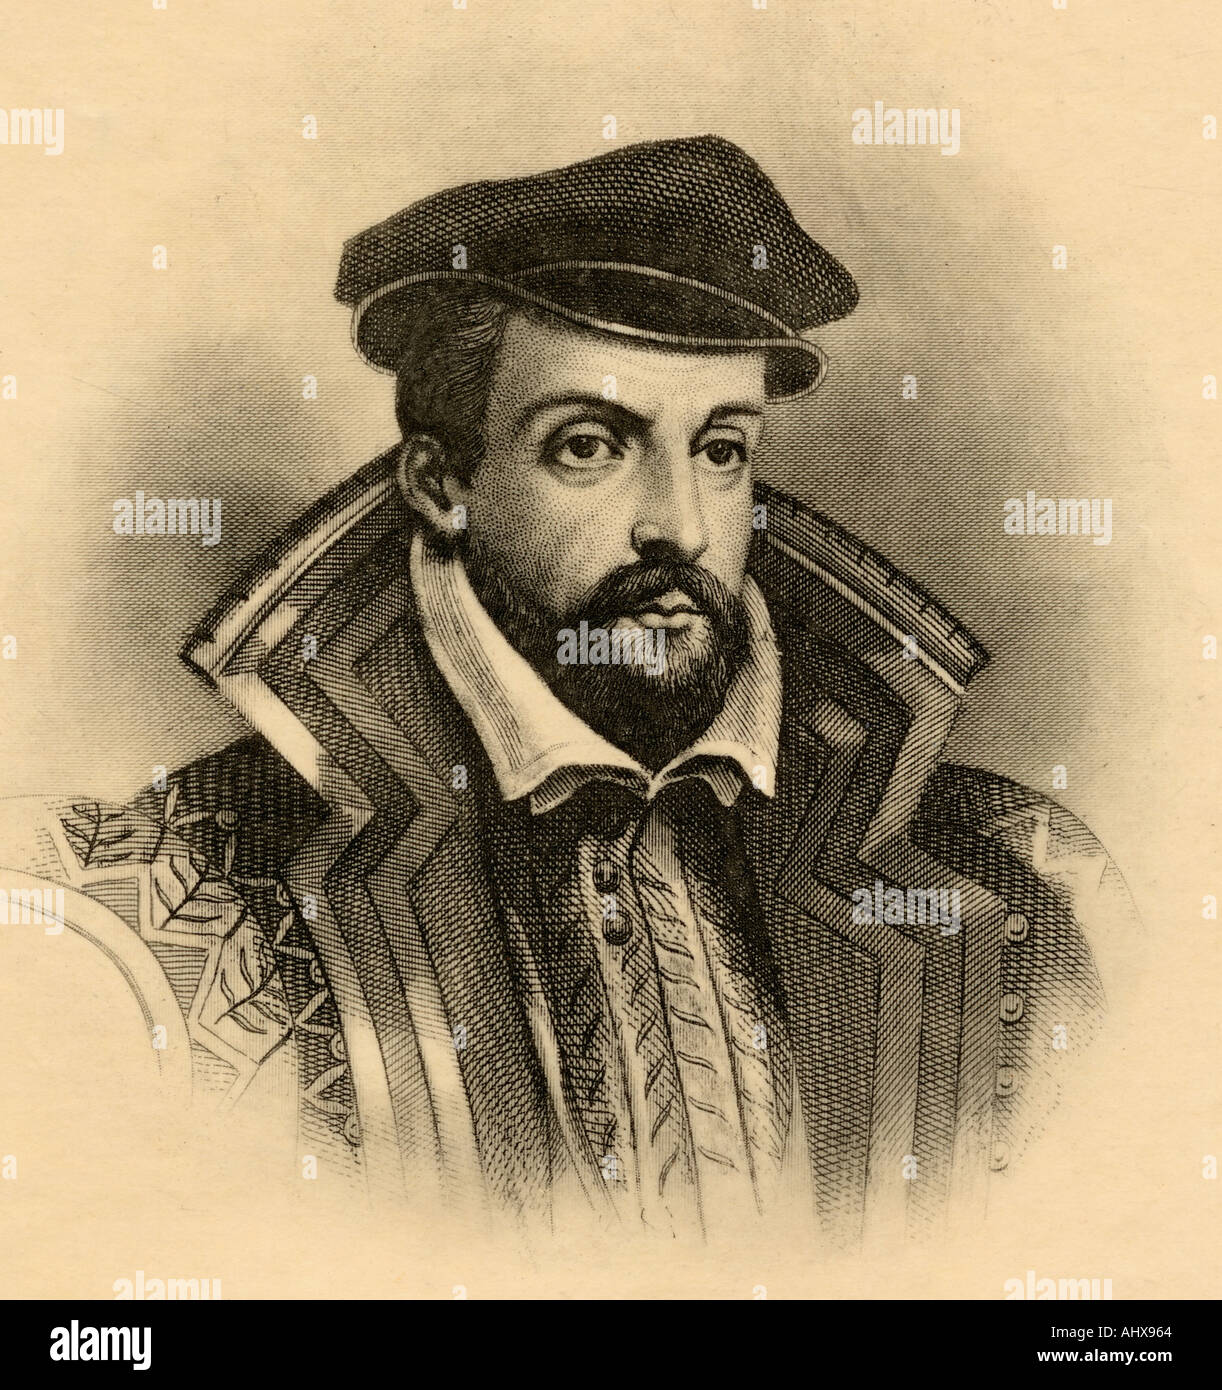 Gaspard de Coligny, Seigneur de Chatillon, 1519 - 1572. Nobile francese, ammiraglio e leader protestanti. Foto Stock